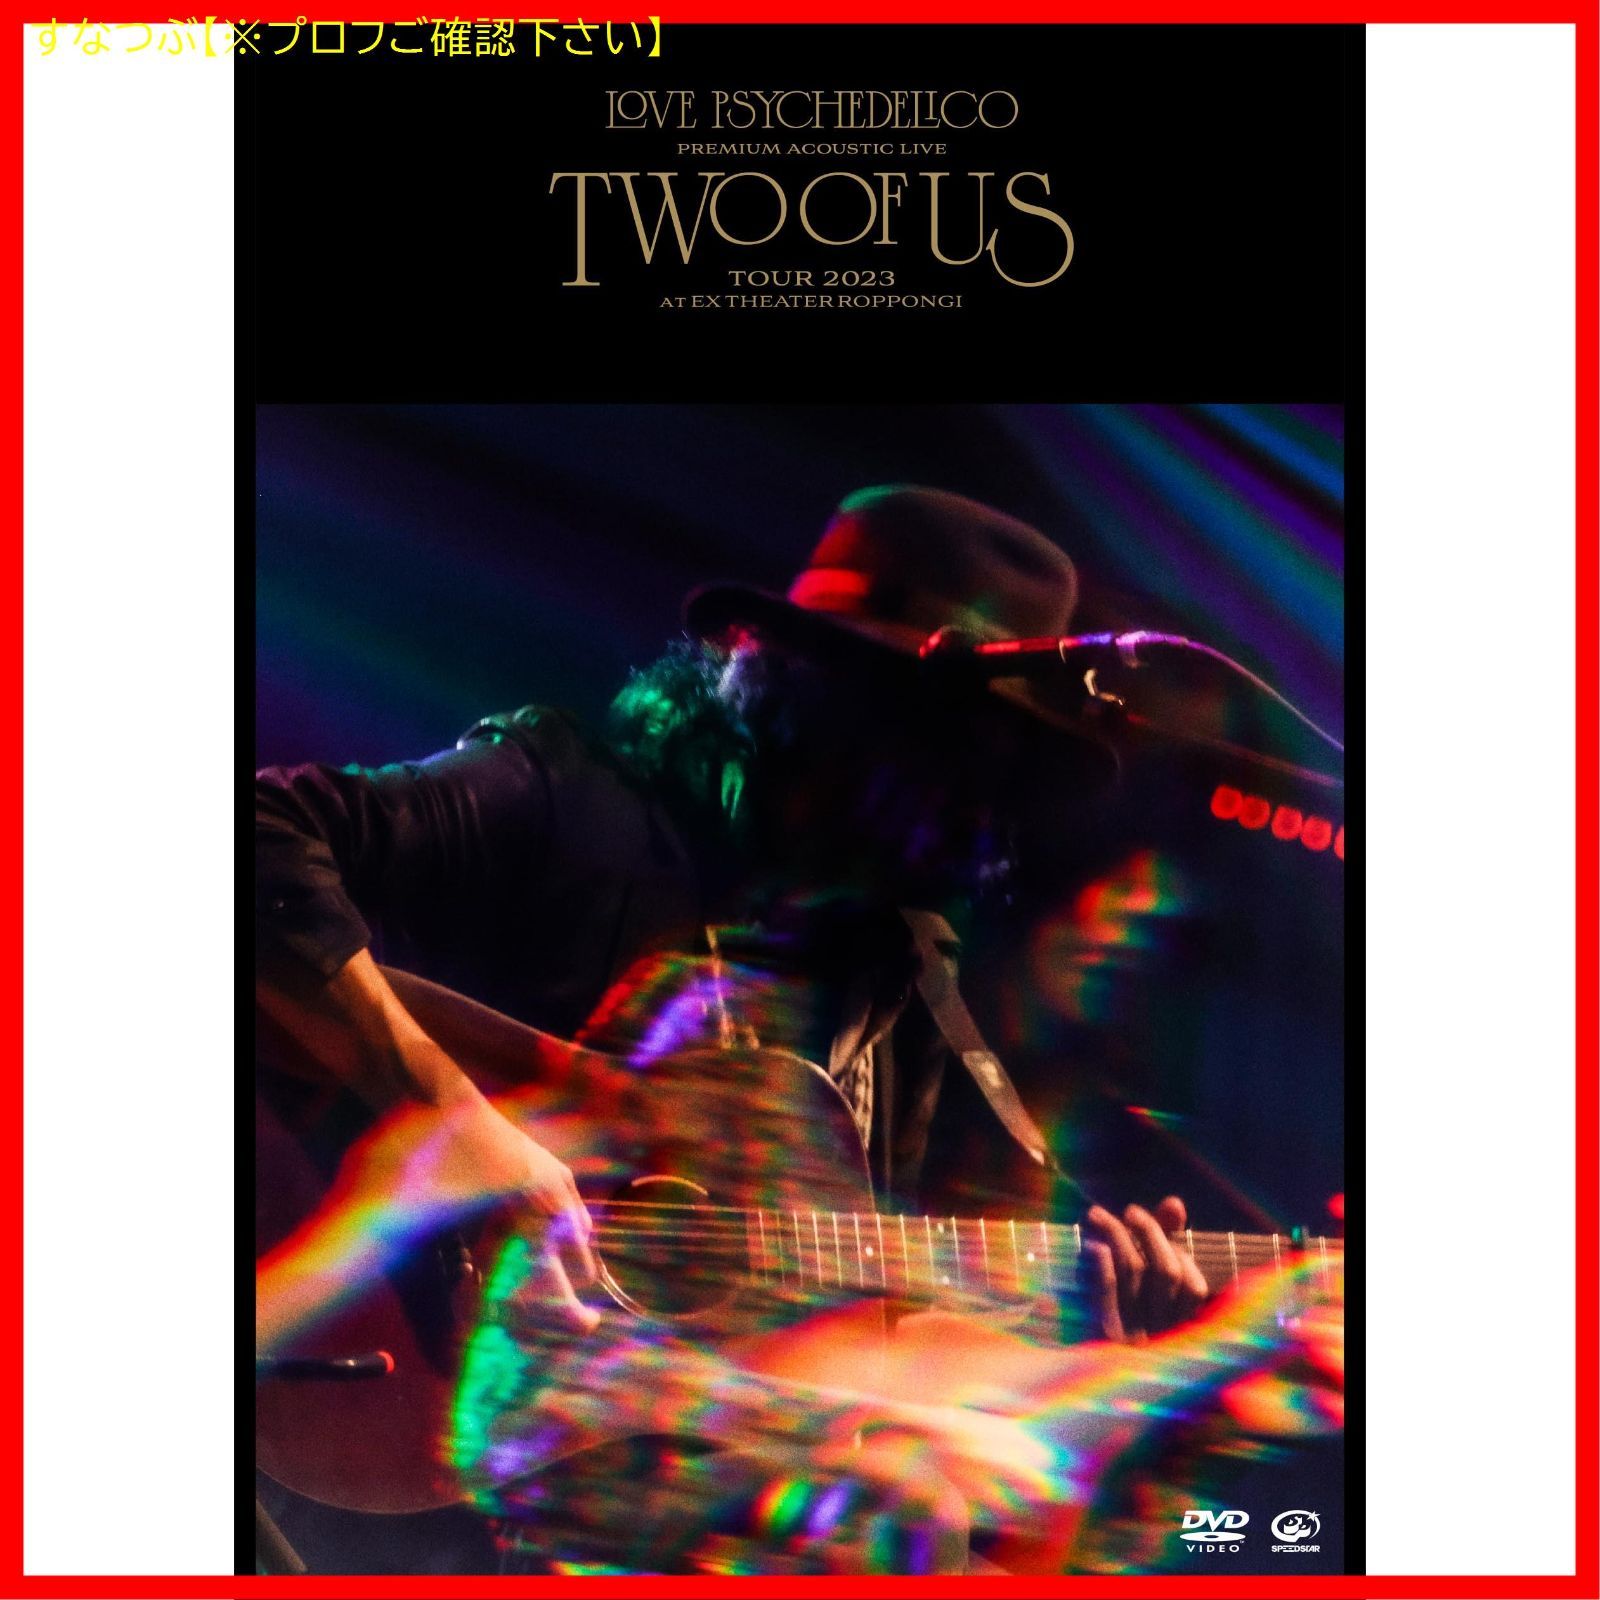 【新品未開封】Premium Acoustic Live “TWO OF US” Tour 2024 at EX THEATER ROPPONGI  [通常盤] [2DVD] LOVE PSYCHEDELICO (出演) 形式: DVD